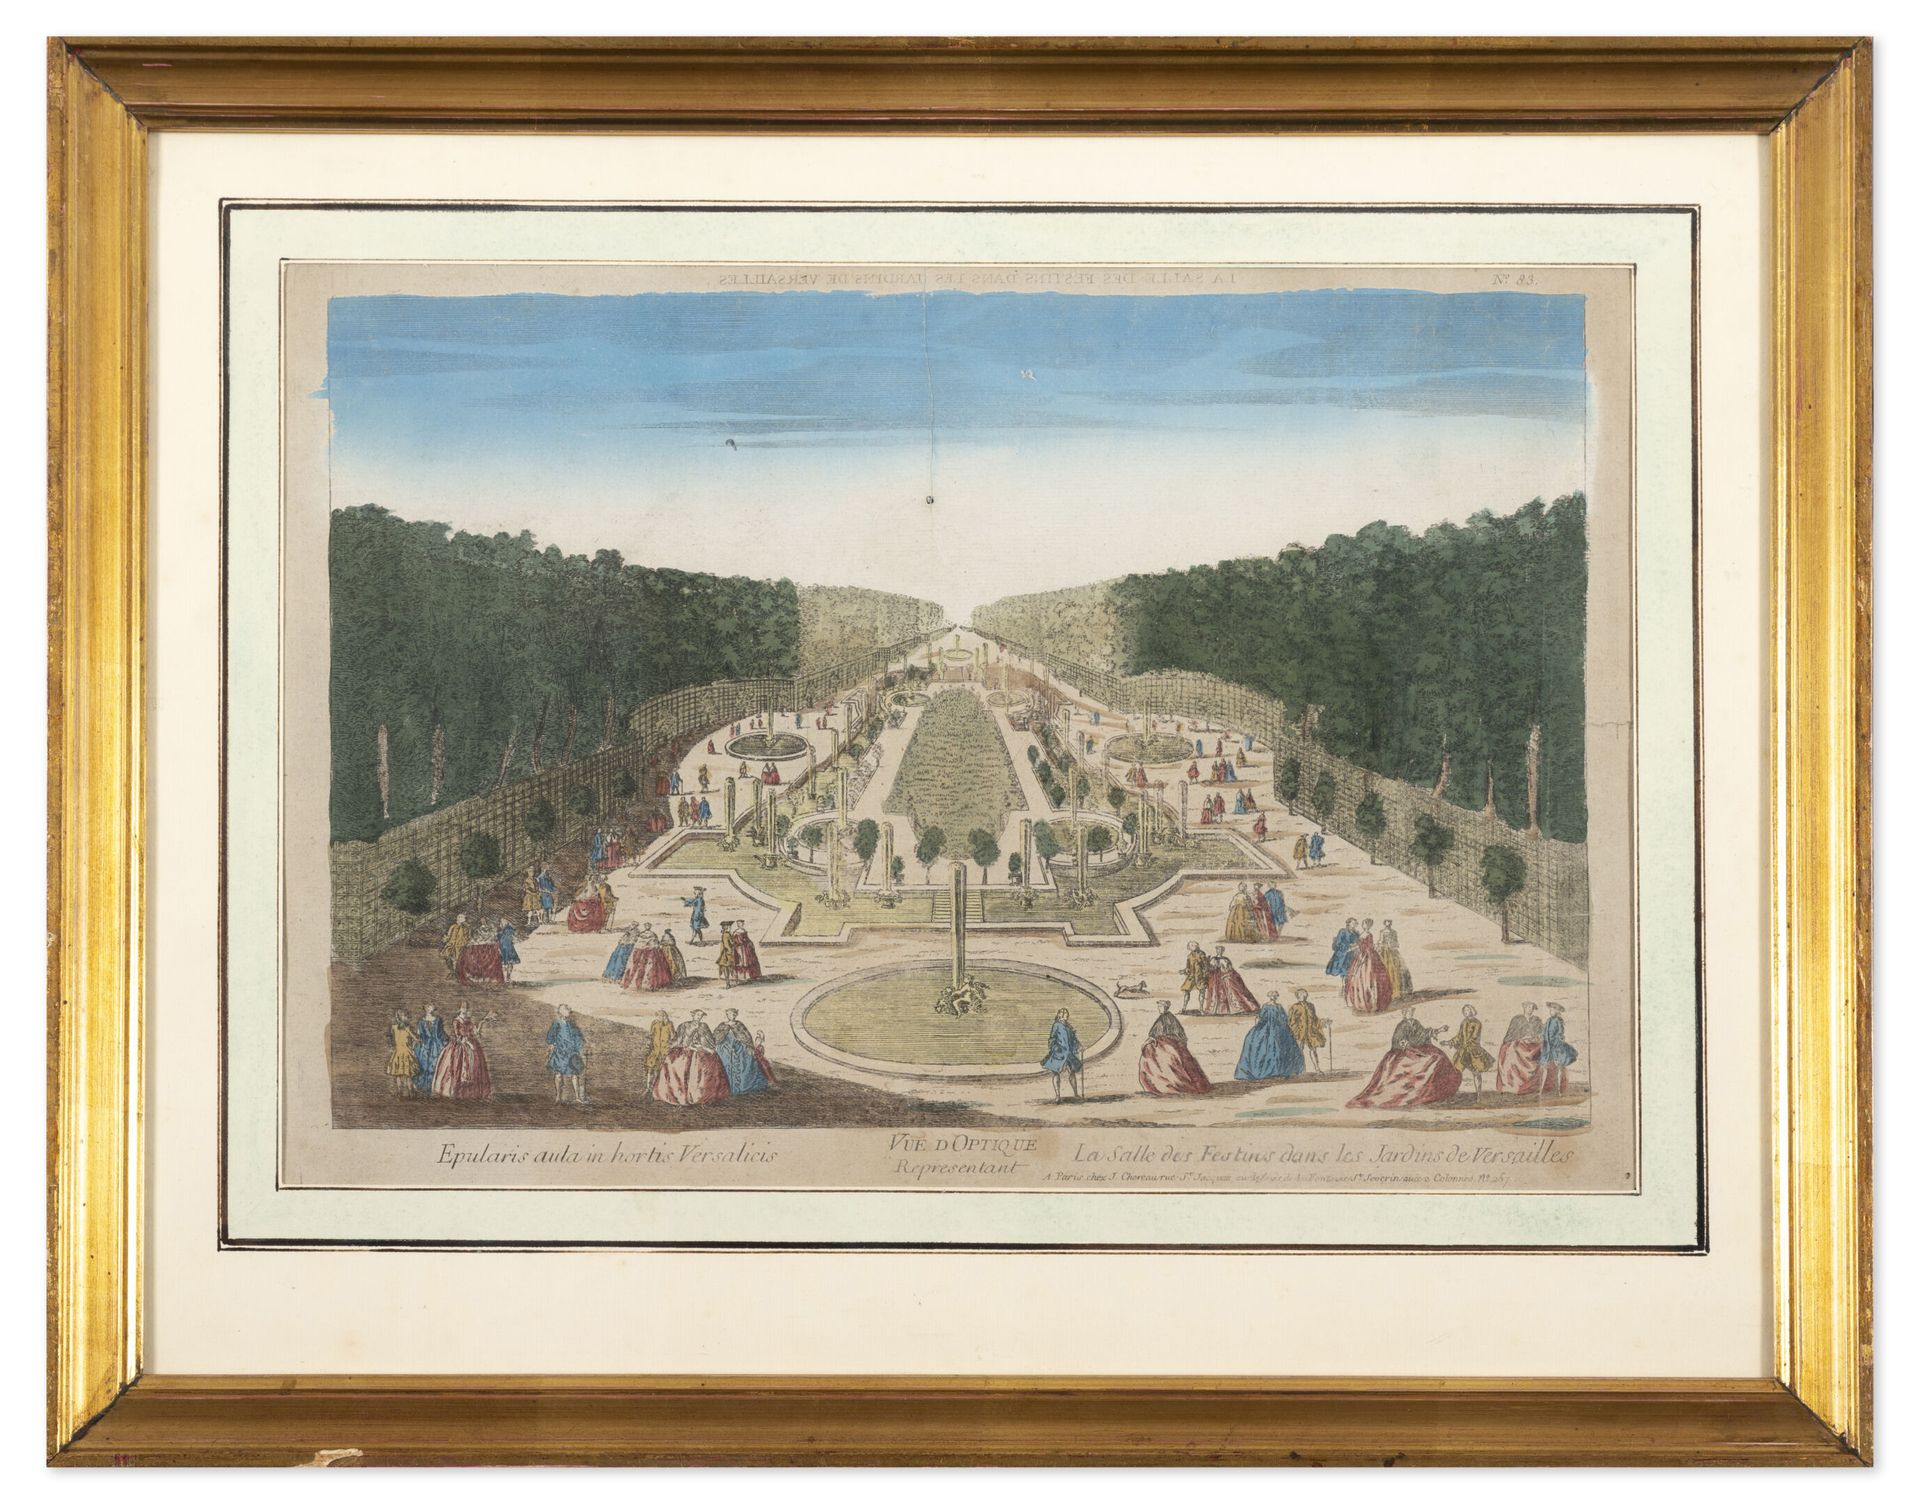 Null La Salle des festins nei giardini di Versailles.

Visione ottica migliorata&hellip;